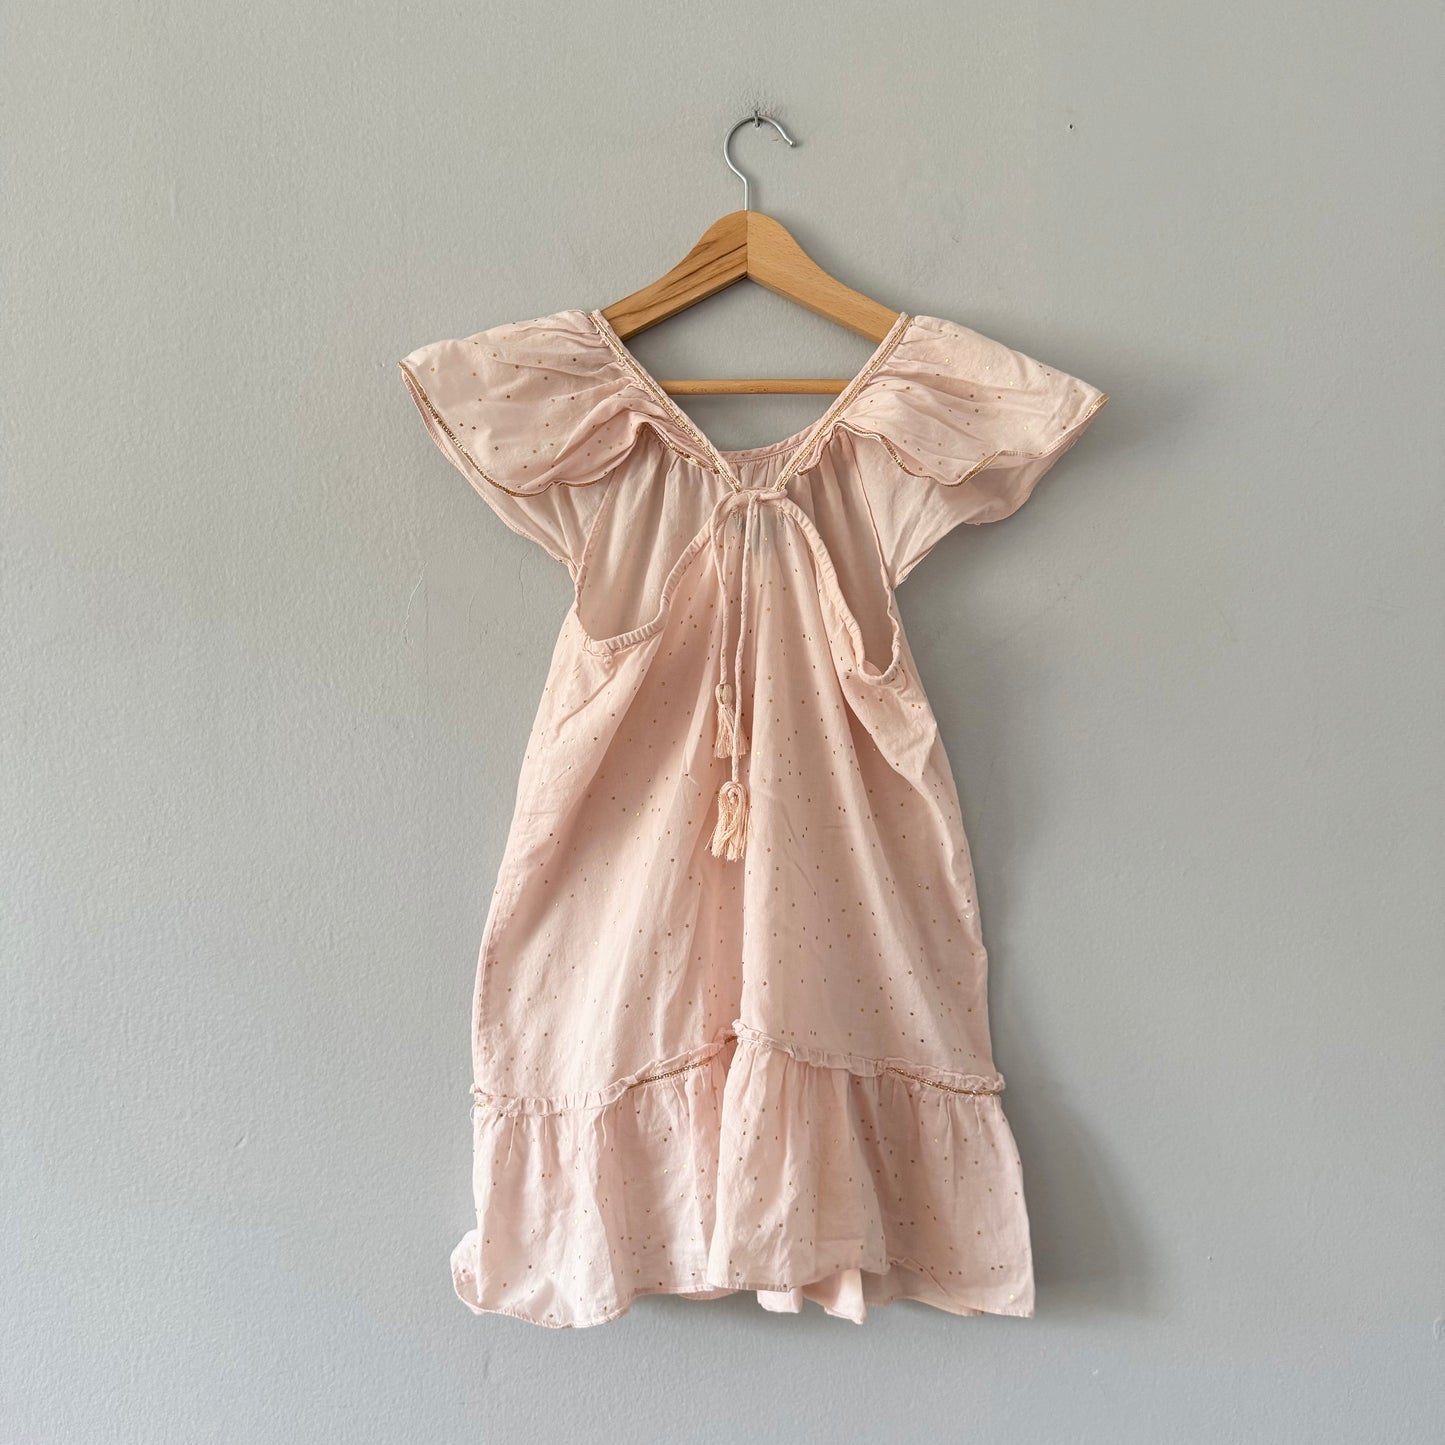 Velveteen / Light pink blouse tank dress / 8Y